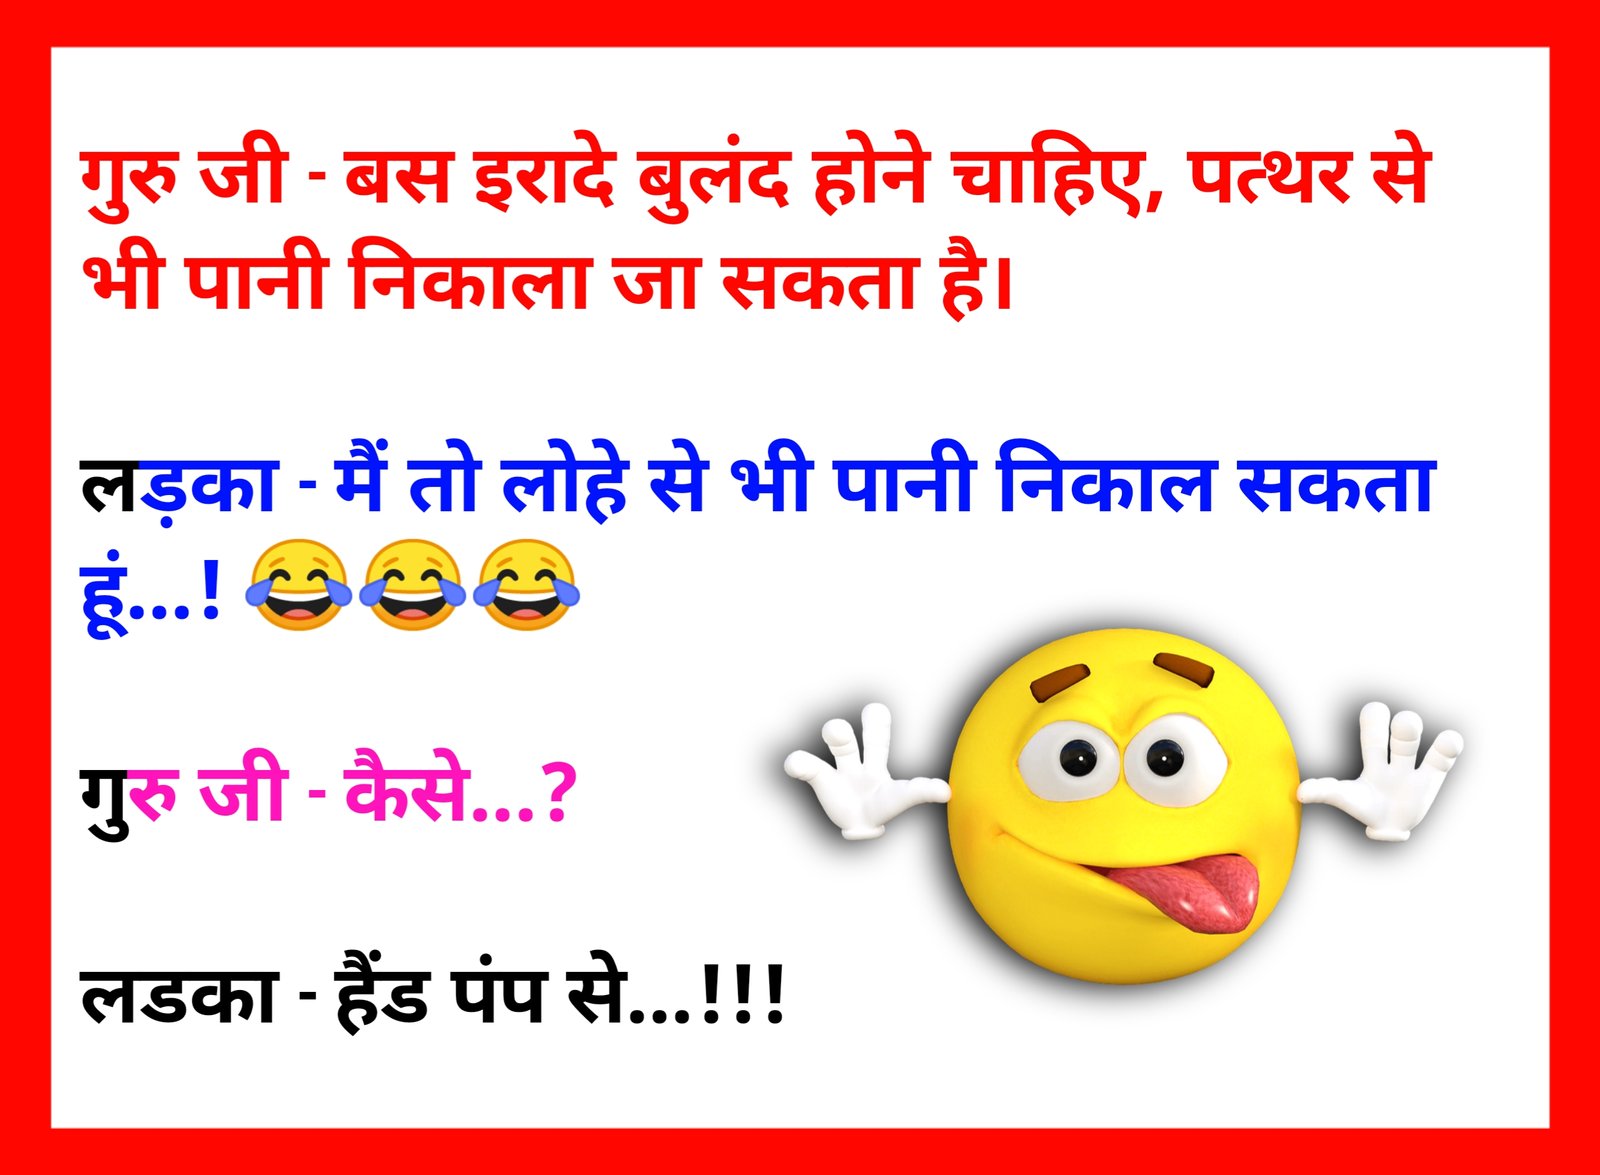 Funny Jokes In Hindi: एक पेट्रोल पंप पर मजेदार बोर्ड लगा था, जिस पर लिखा  था....पढ़े मजेदार जोक्‍स - Betul Update